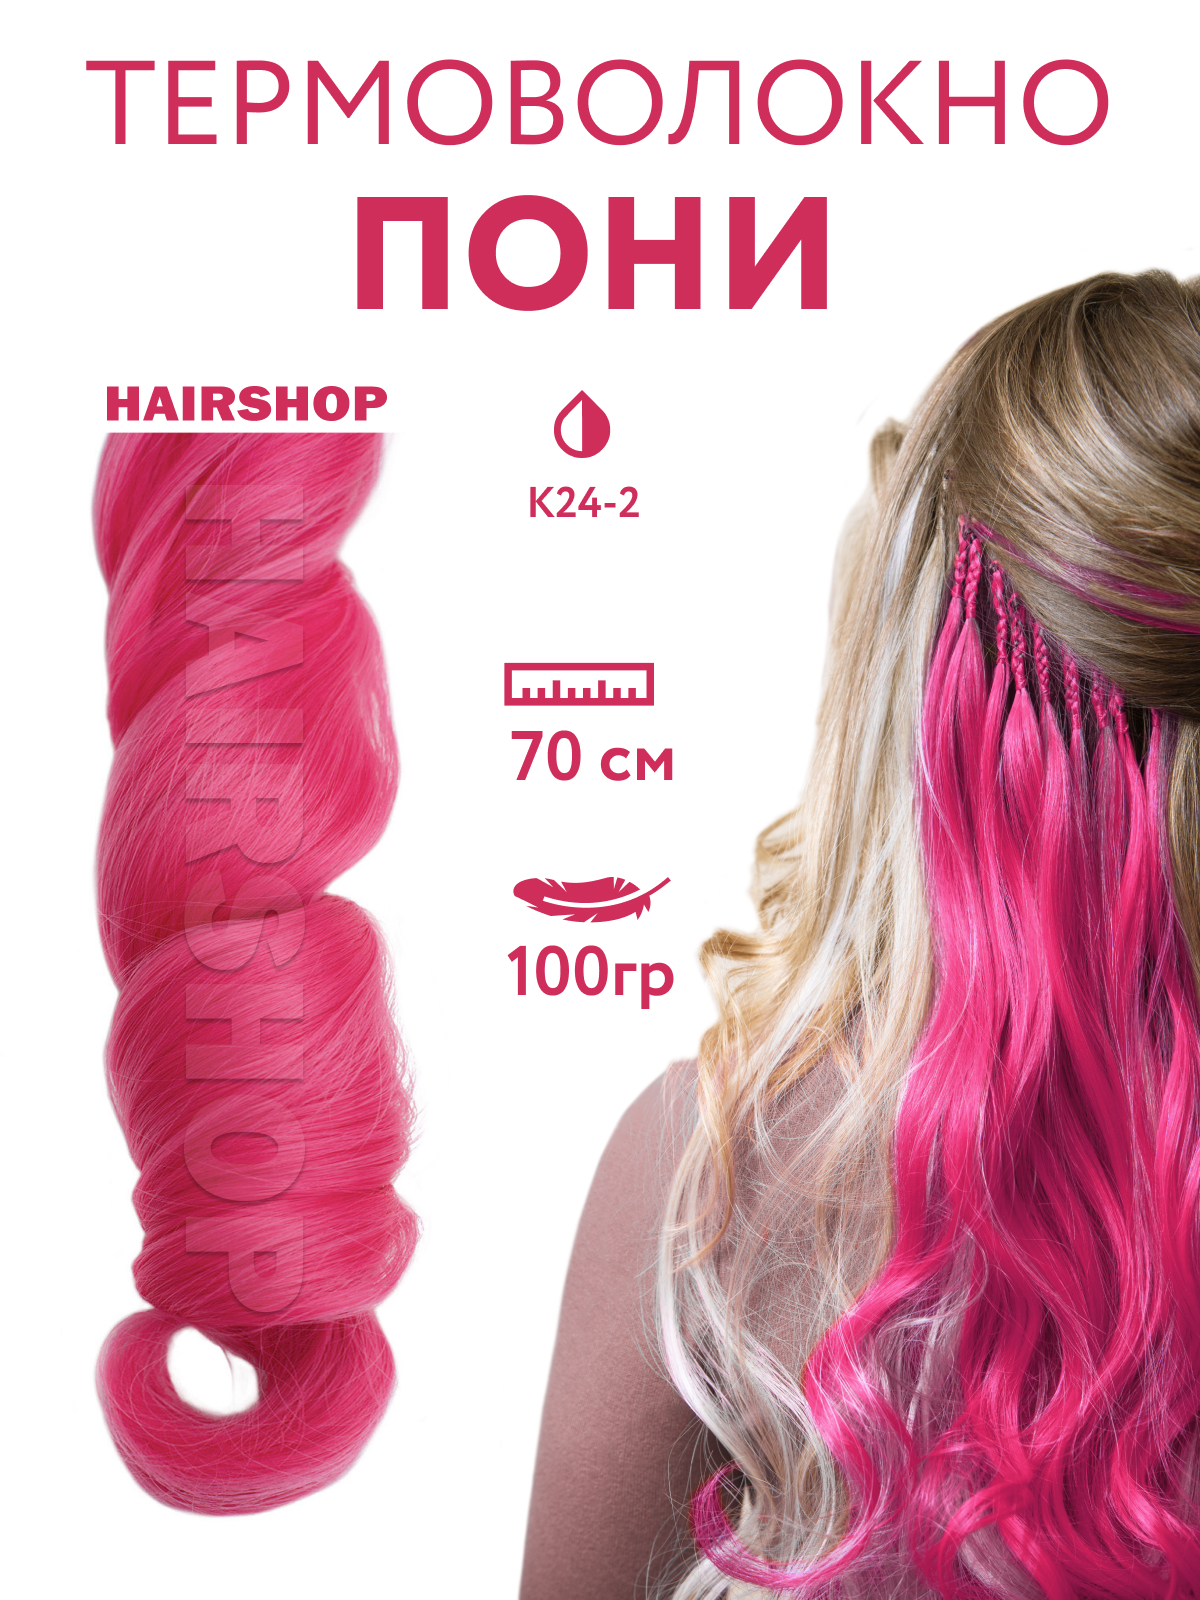 Канекалон HAIRSHOP Пони HairUp для точечного афронаращивания К24-2 Темно-розовый 1,4м канекалон hairshop пони hairup для точечного афронаращивания к24 2 темно розовый 1 4м